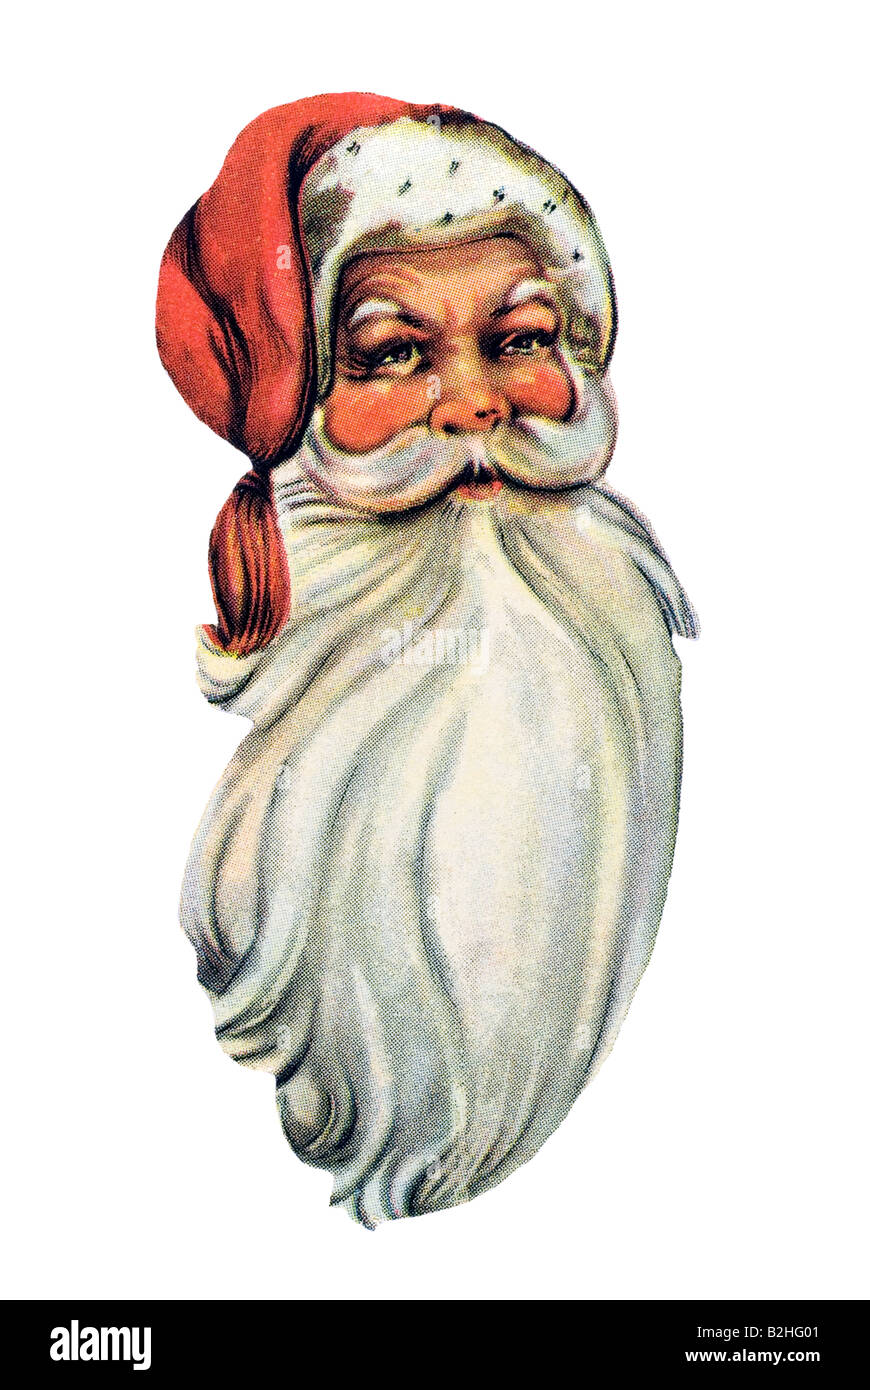 Vecchio Babbo Natale cappuccio rosso e grande barba bianca del XIX secolo in Germania Foto Stock